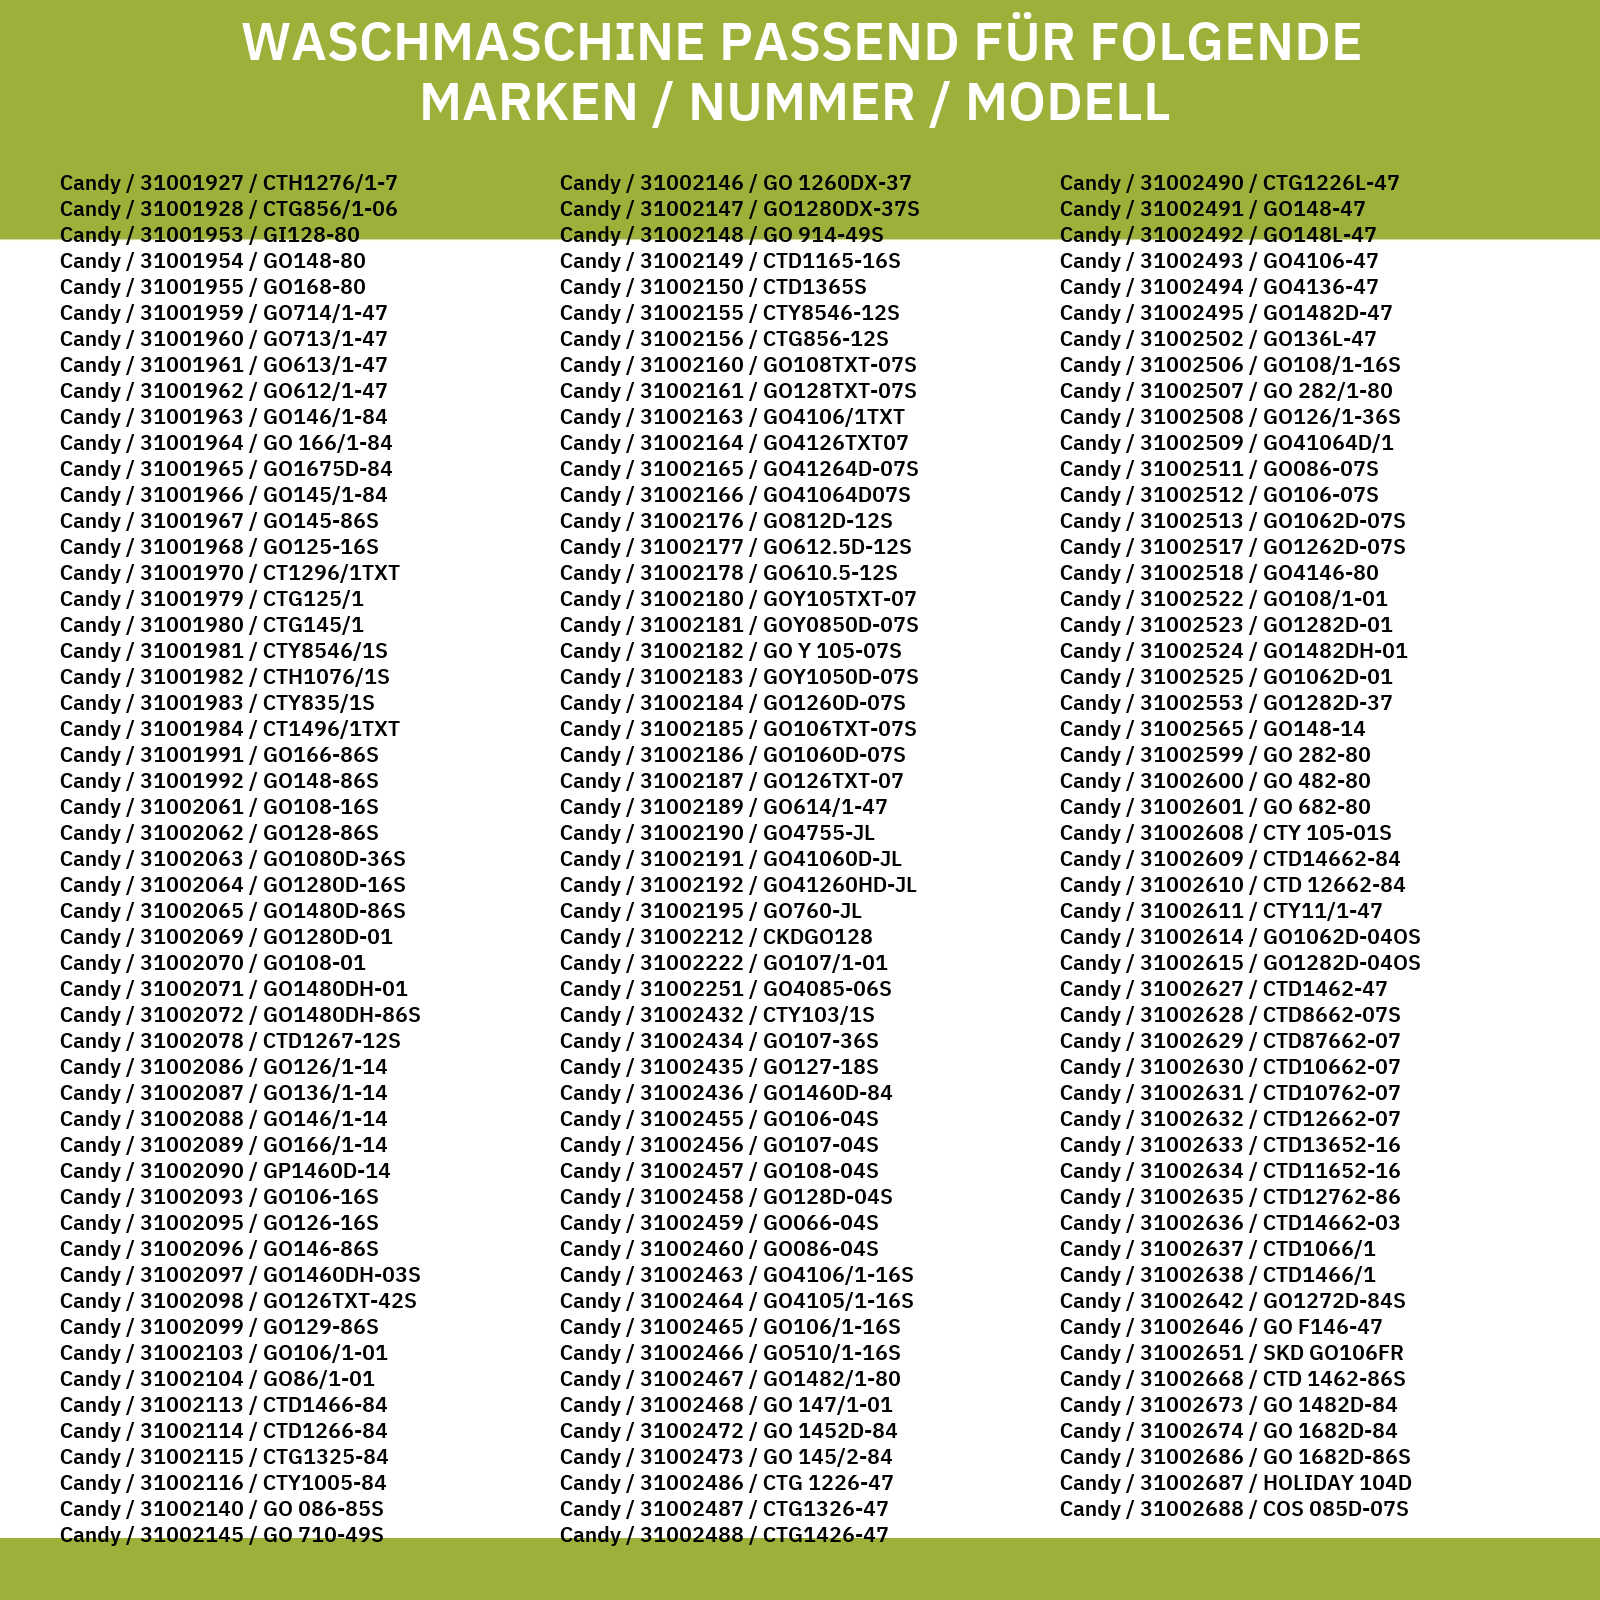 Flusensiebeinsatz HOOVER 41021233 für Waschmaschine